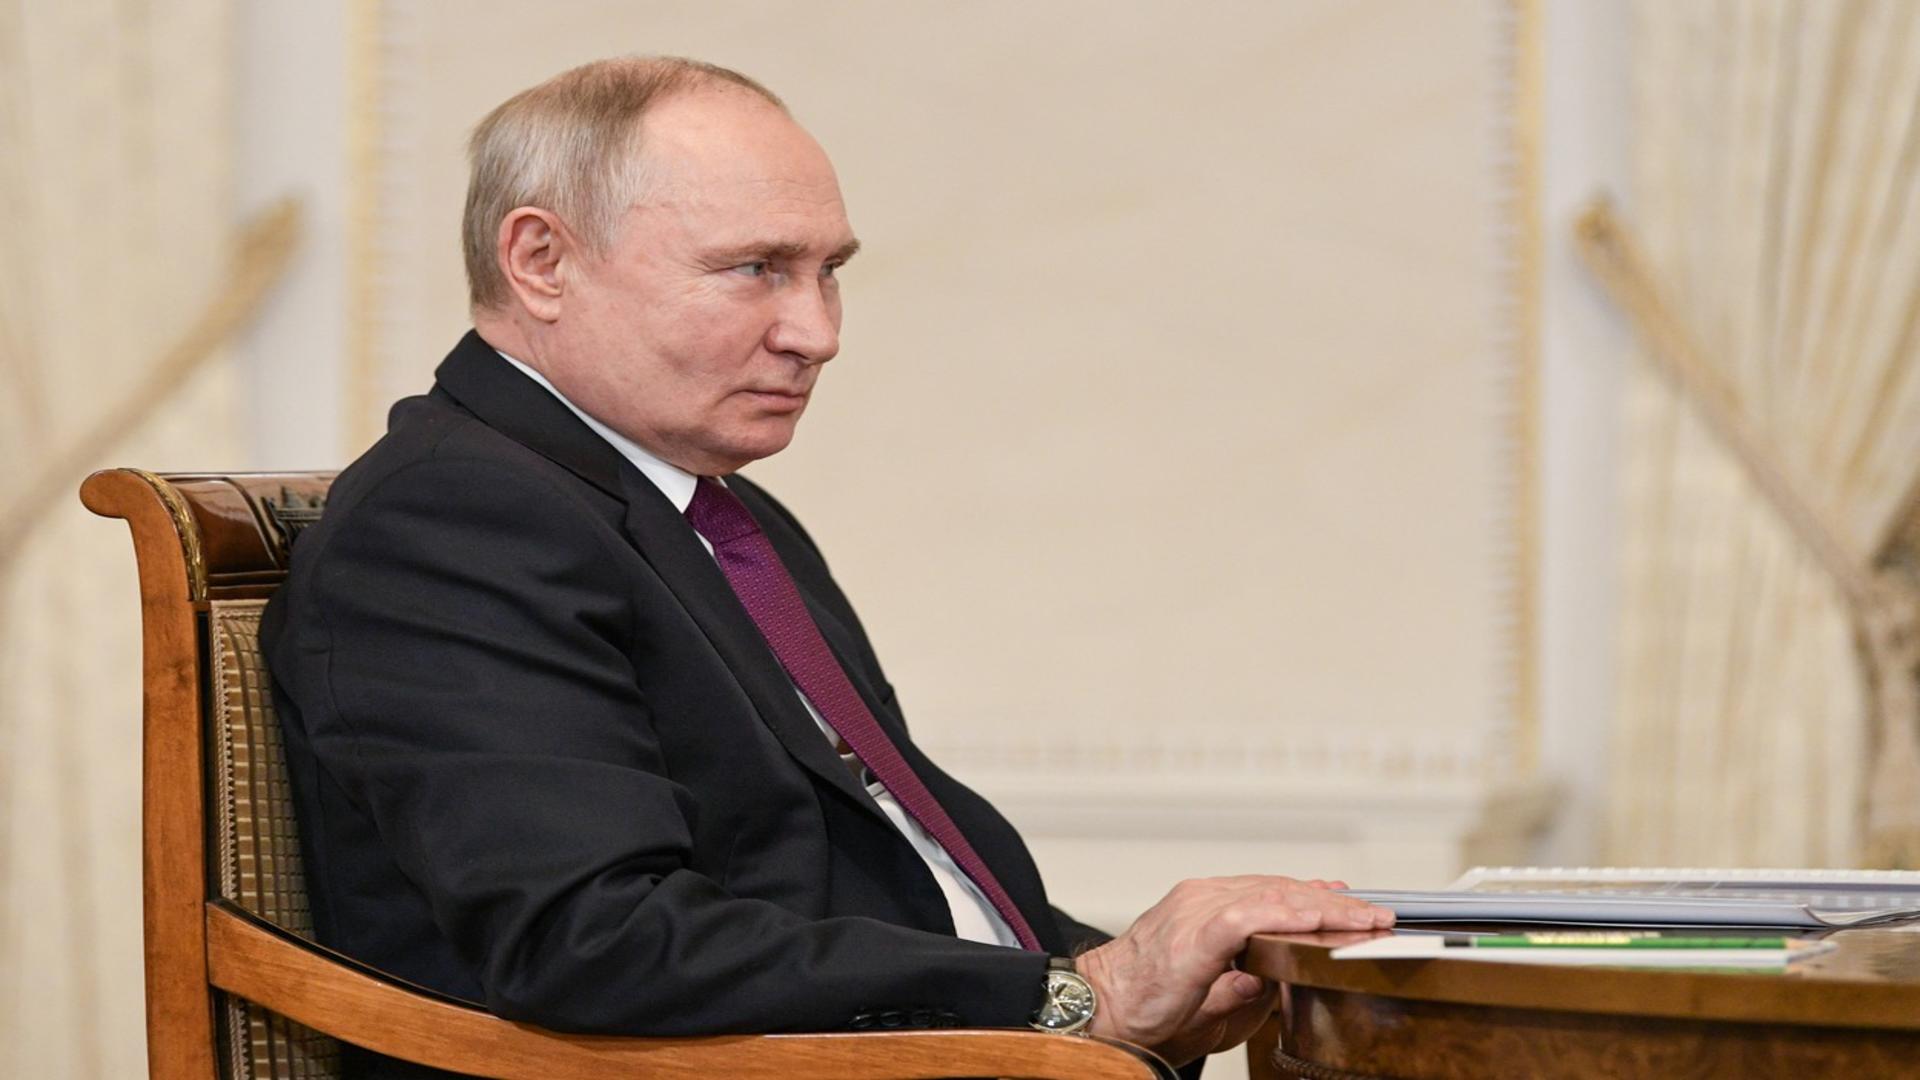 Război în Ucraina, ziua 708. Victoria Nuland: “Putin va avea surprize pe linia frontului” – LIVE TEXT